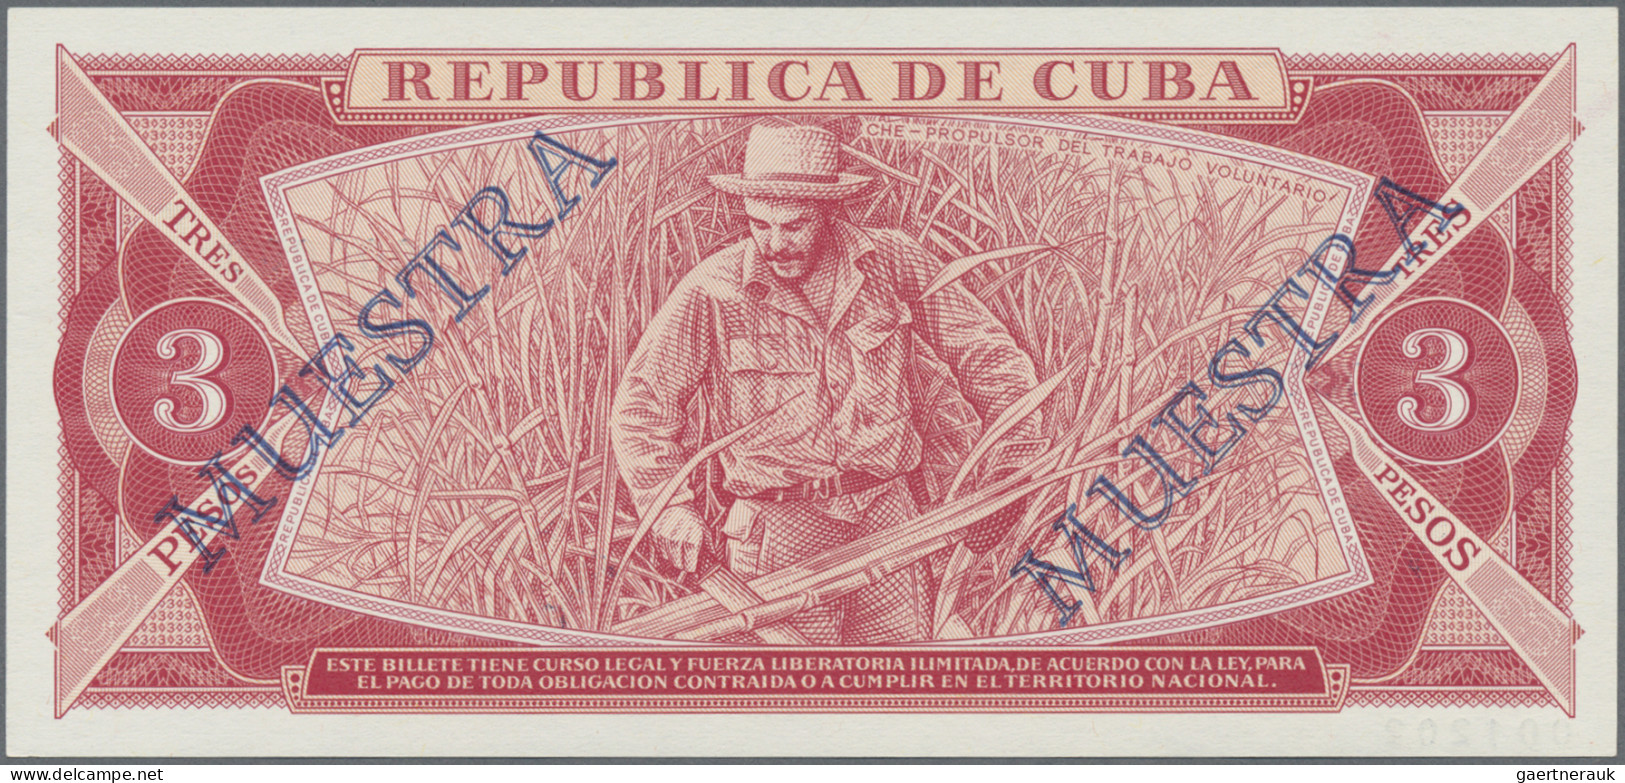 Cuba: Banco Nacional De Cuba, Lot With 6 SPECIMEN, 1964-1983 Series, With 1, 3, - Cuba